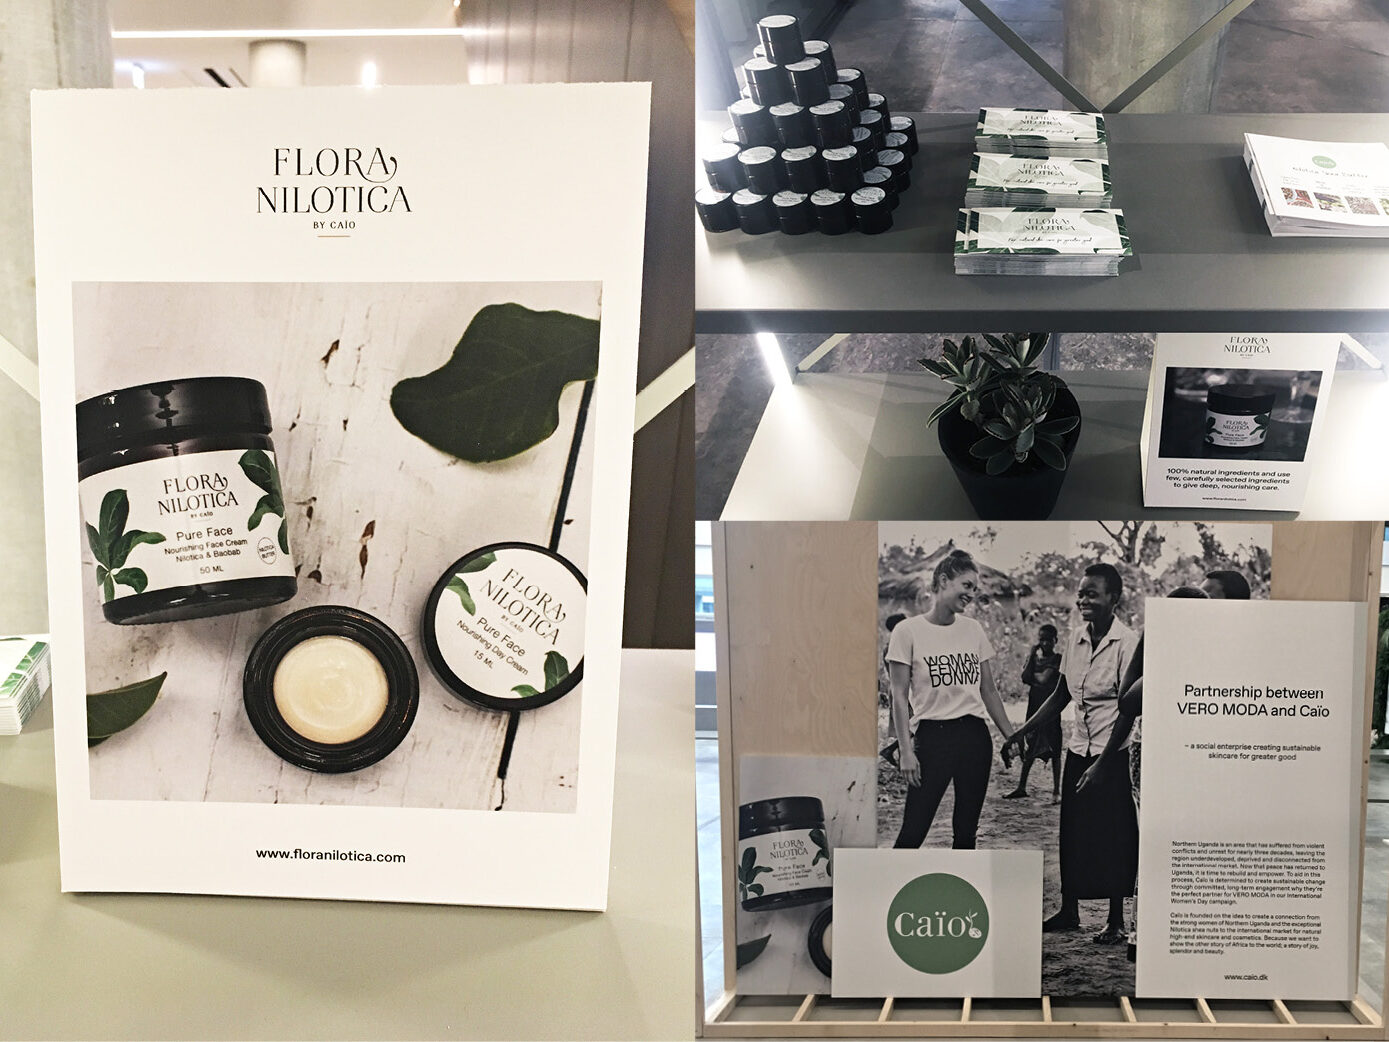 Flora Nilotica produkter, marketing og emballagedesign udstillet ved Bestseller designet af Ann Christina Lykke ved A FAIR AGENCY